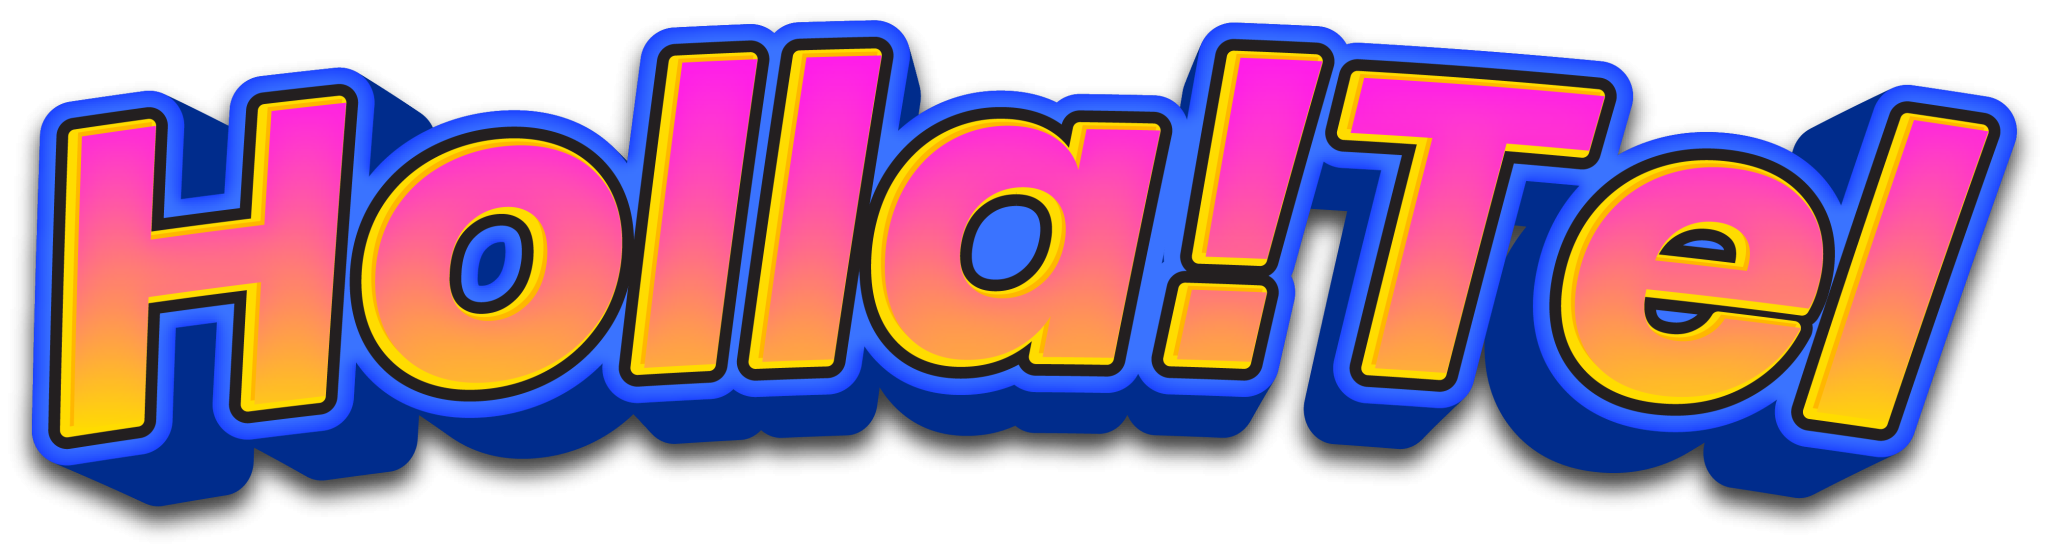 HollaTel-Logo-2048x552